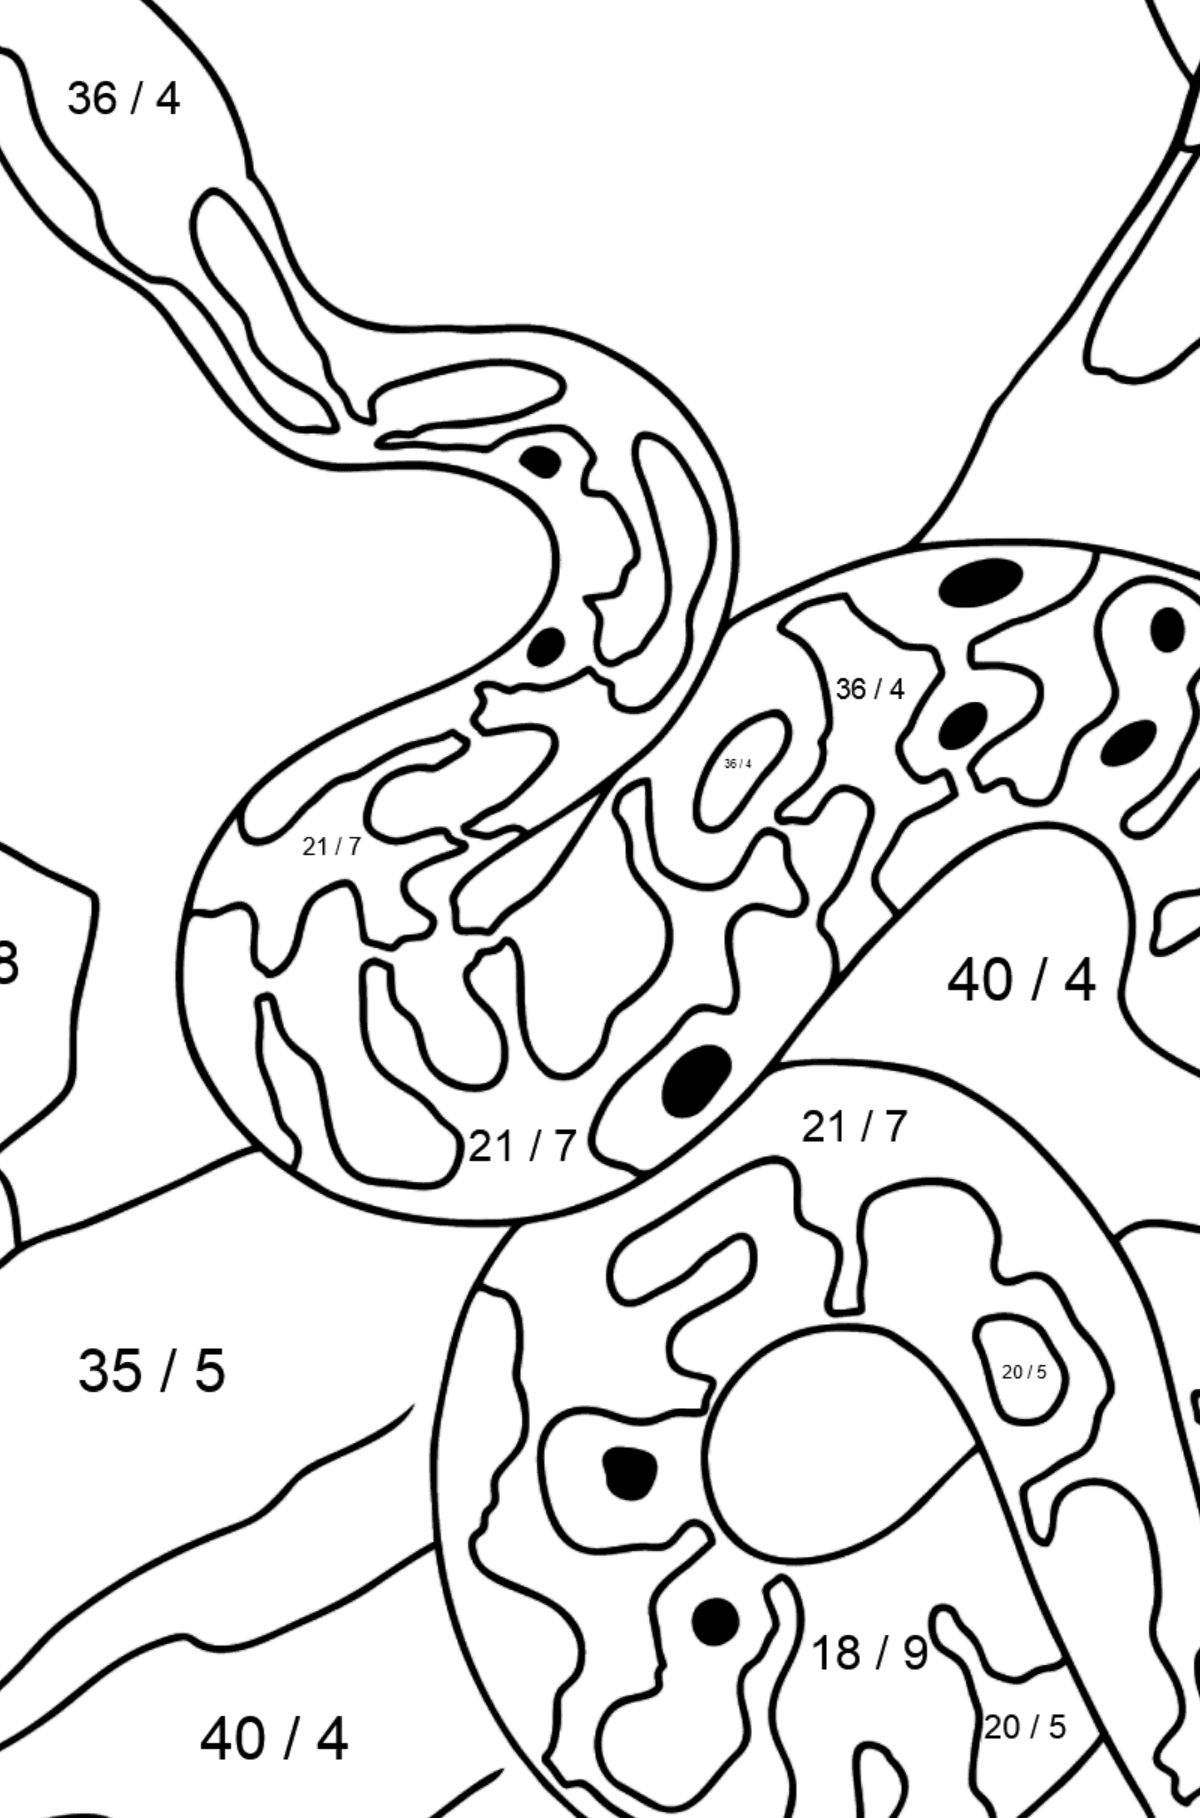 Disegno di Serpente da colorare - Colorazione matematica - Divisione per bambini